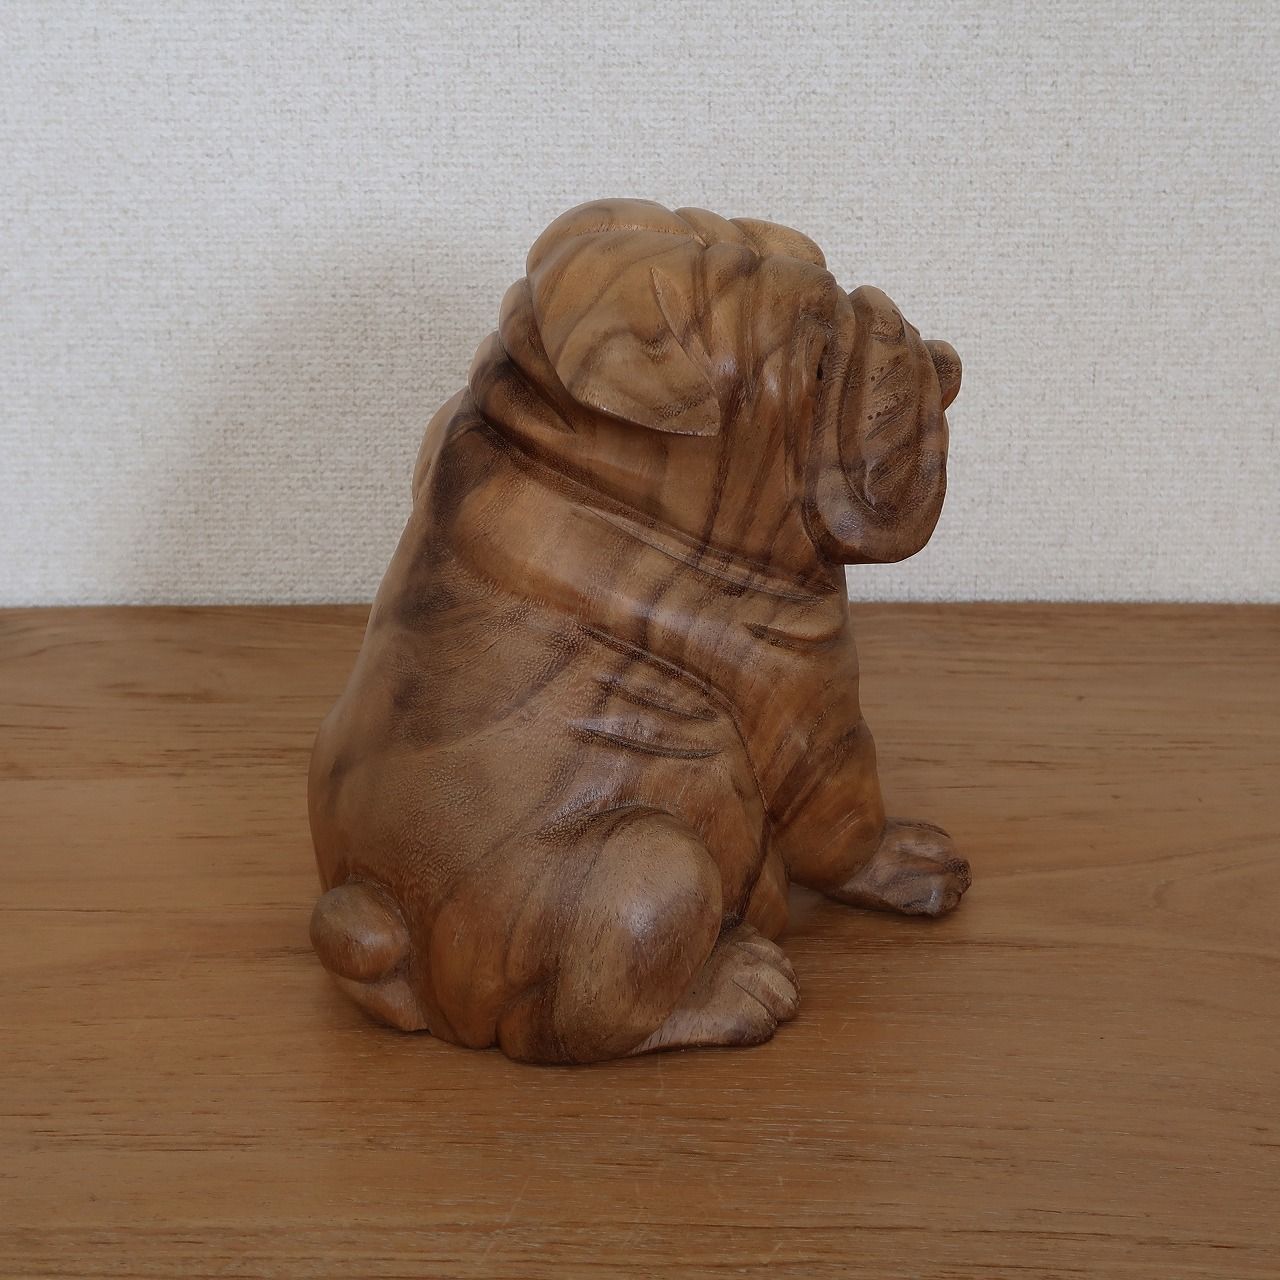 ブルドッグの木彫り 座像 20cm 木製 犬の置き物 オブジェ オーナメント 